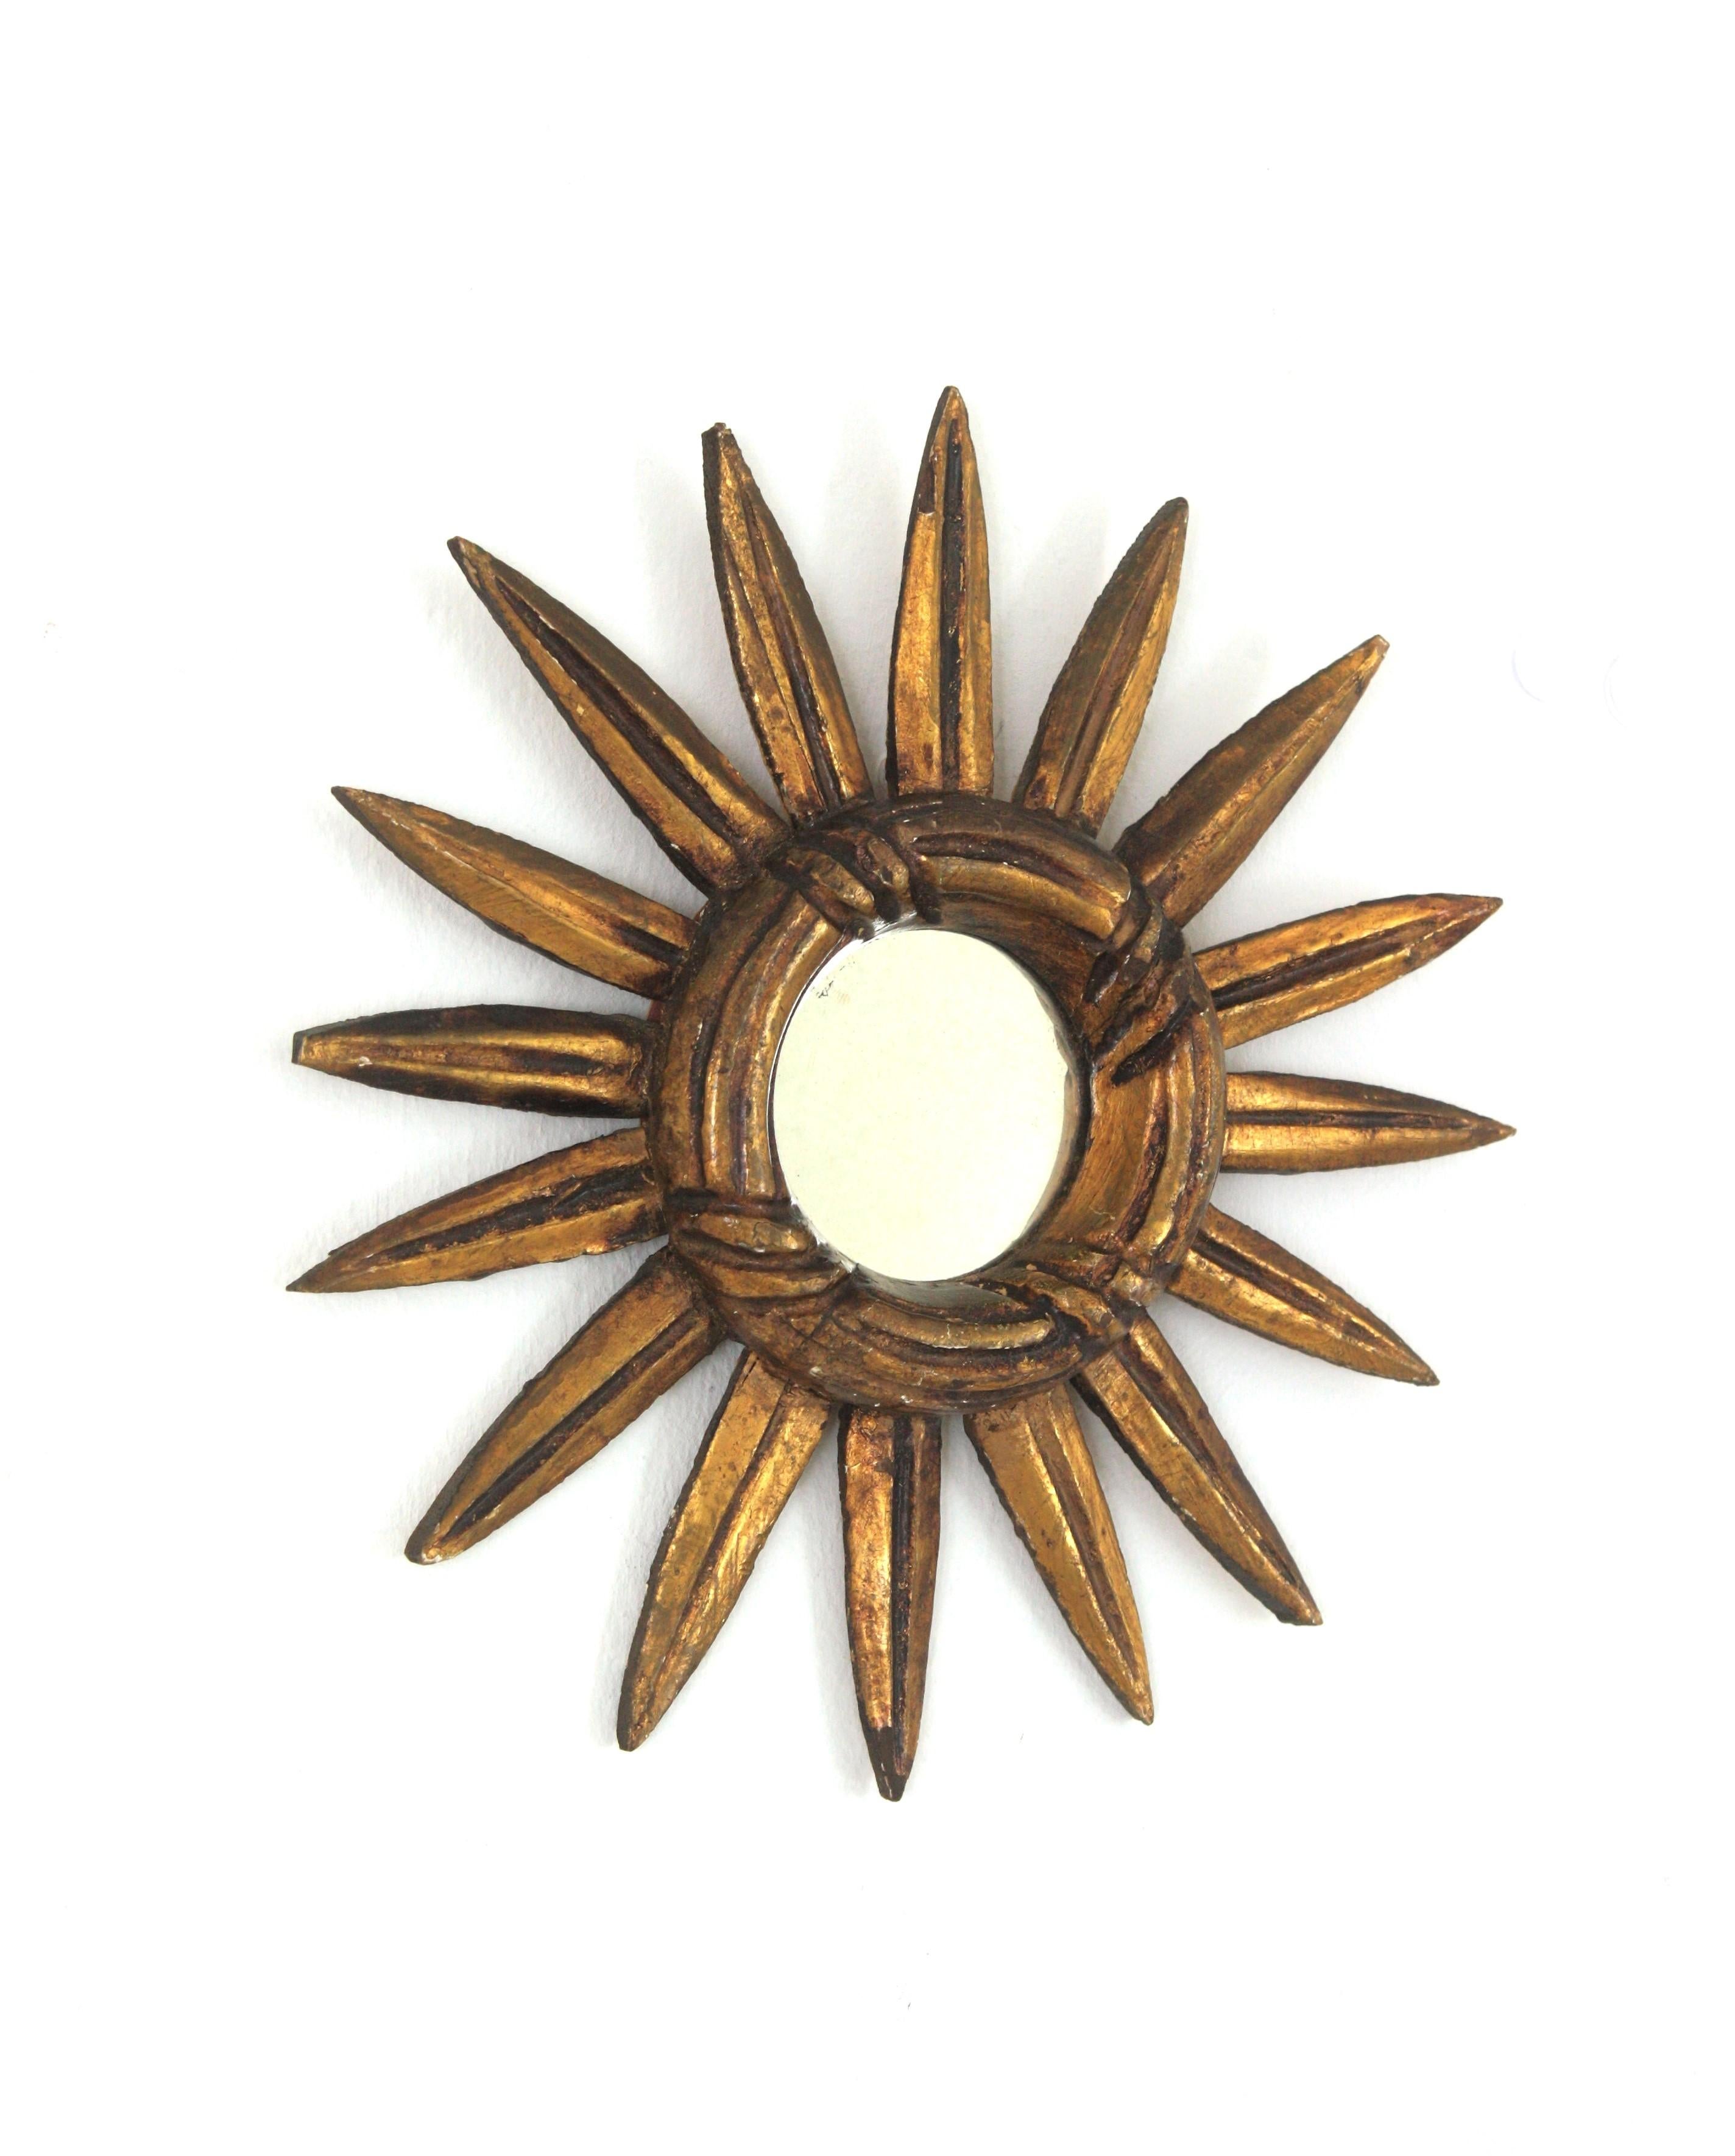 Kleiner Spiegel mit Sonnenschliff aus geschnitztem Vergoldungsholz, Spanien, 1940-1950er Jahre.
Mini-Sonnenschliffspiegel im Barockstil.
Er hat einen geschnitzten Ring mit Streifen und Schnitzdetails auf den Strahlen.
Mit dunklem Blattgold vergoldet